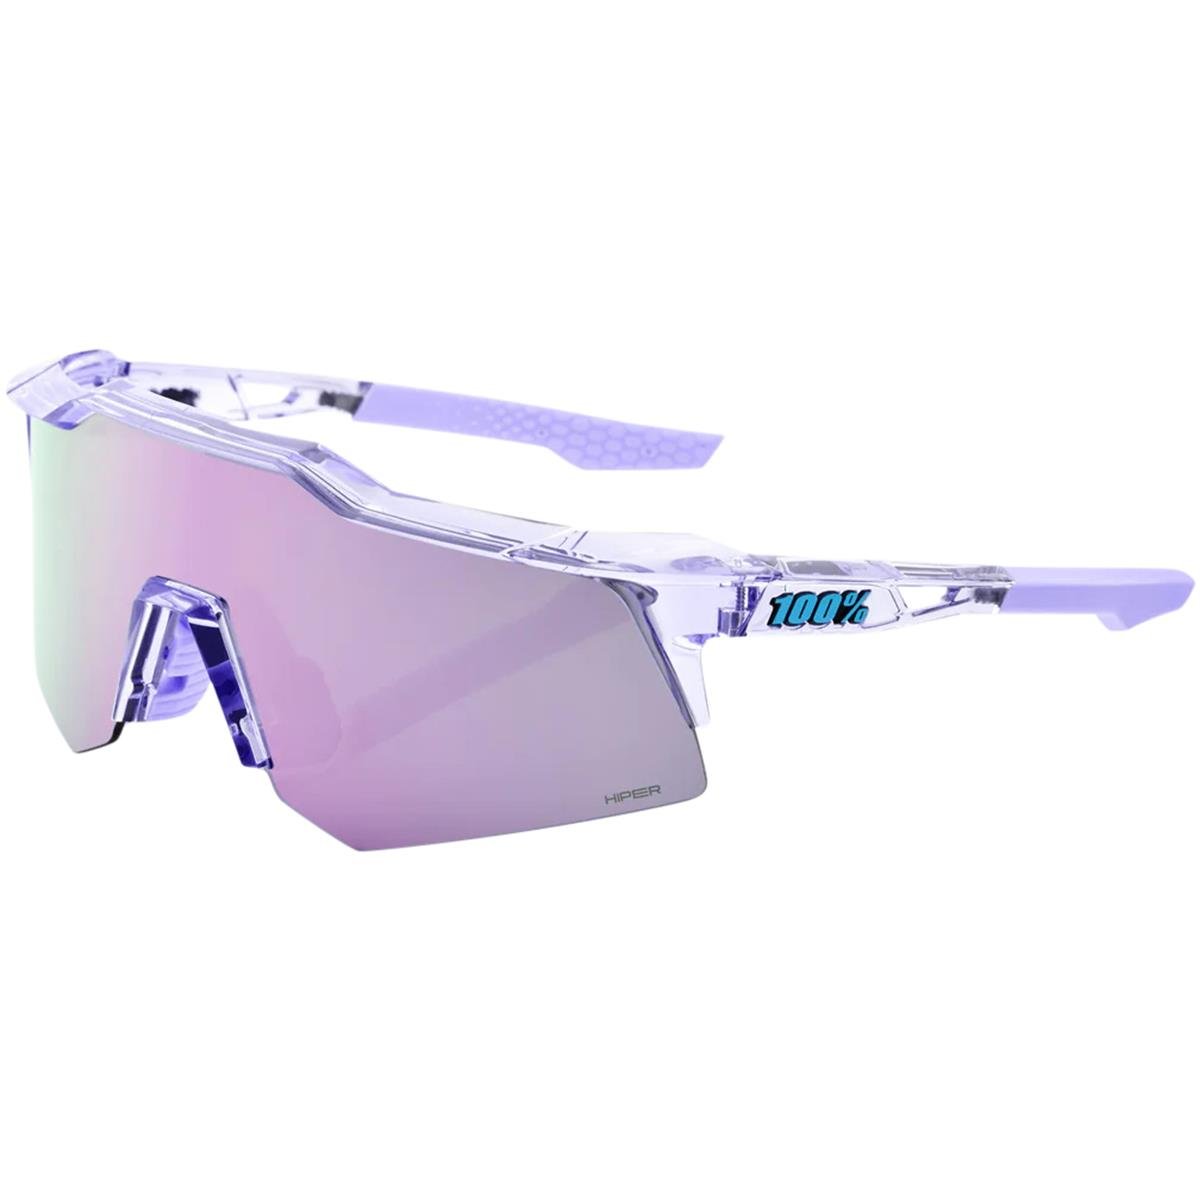 100% MTB Sport Glasses Speedcraft XS Polished Translucent Lavender - HiPER Lavender Mirror Lens